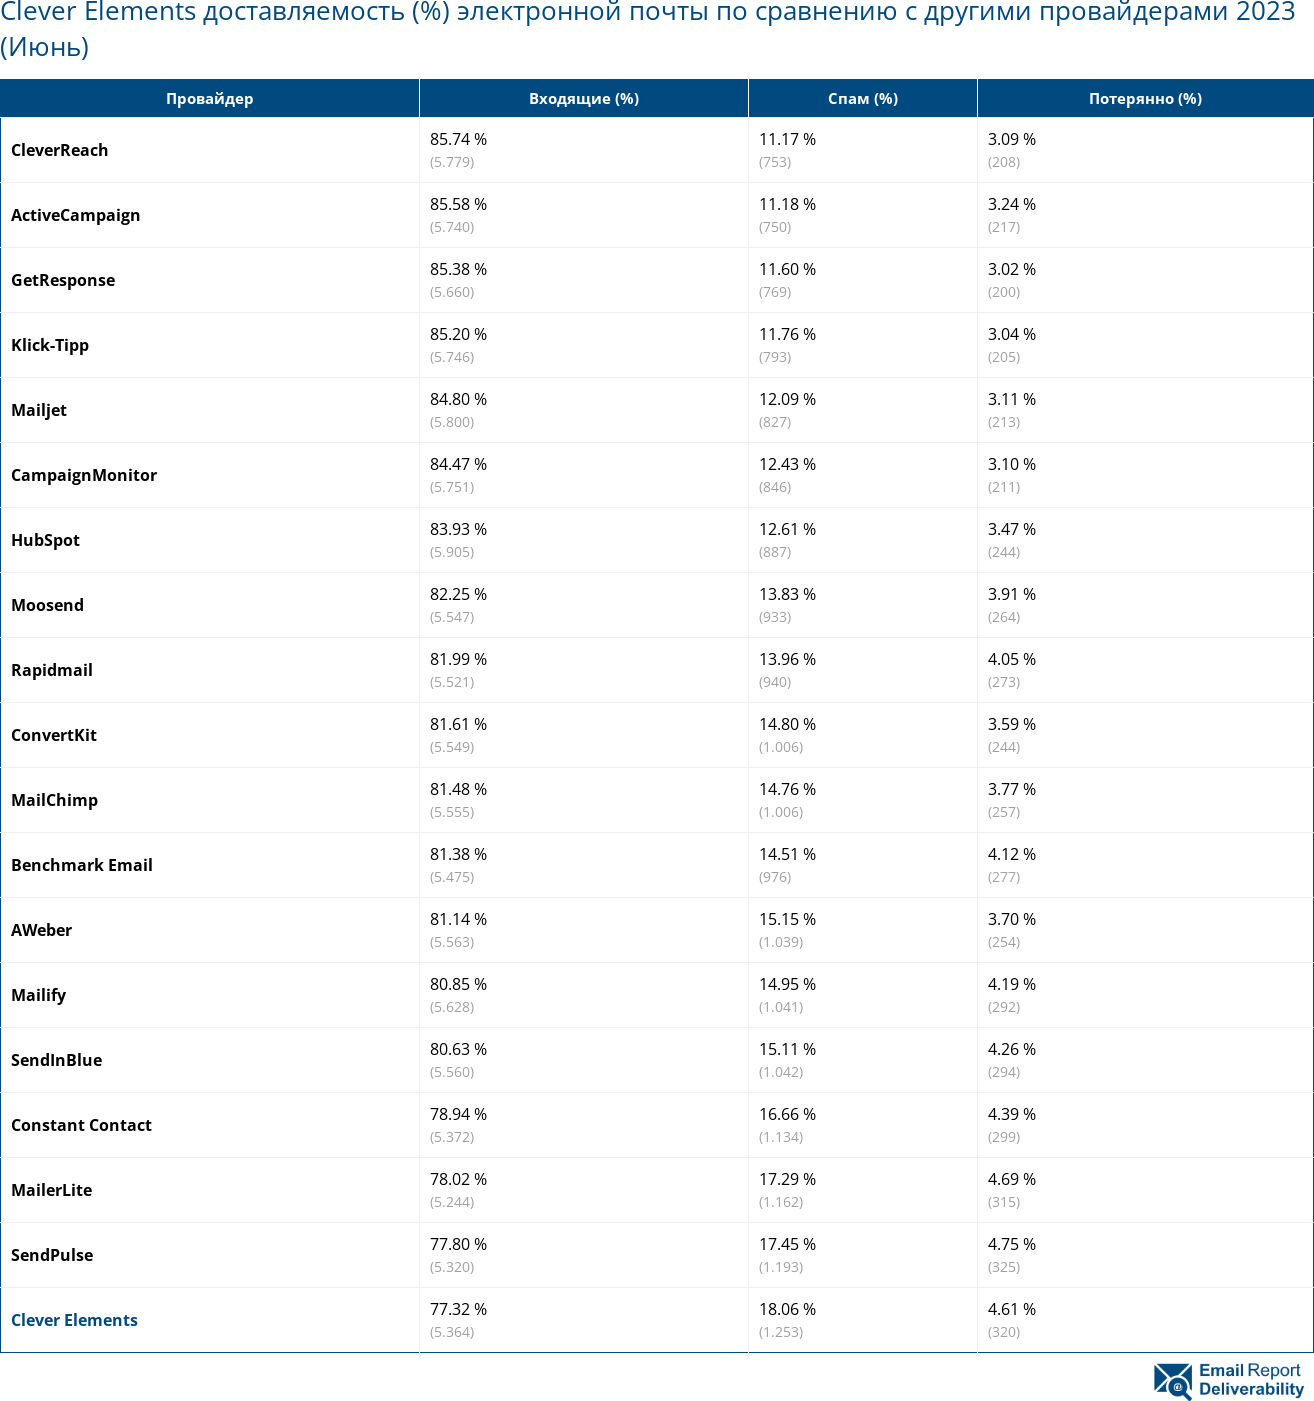 Clever Elements доставляемость (%) электронной почты по сравнению с другими провайдерами 2023 (Июнь)